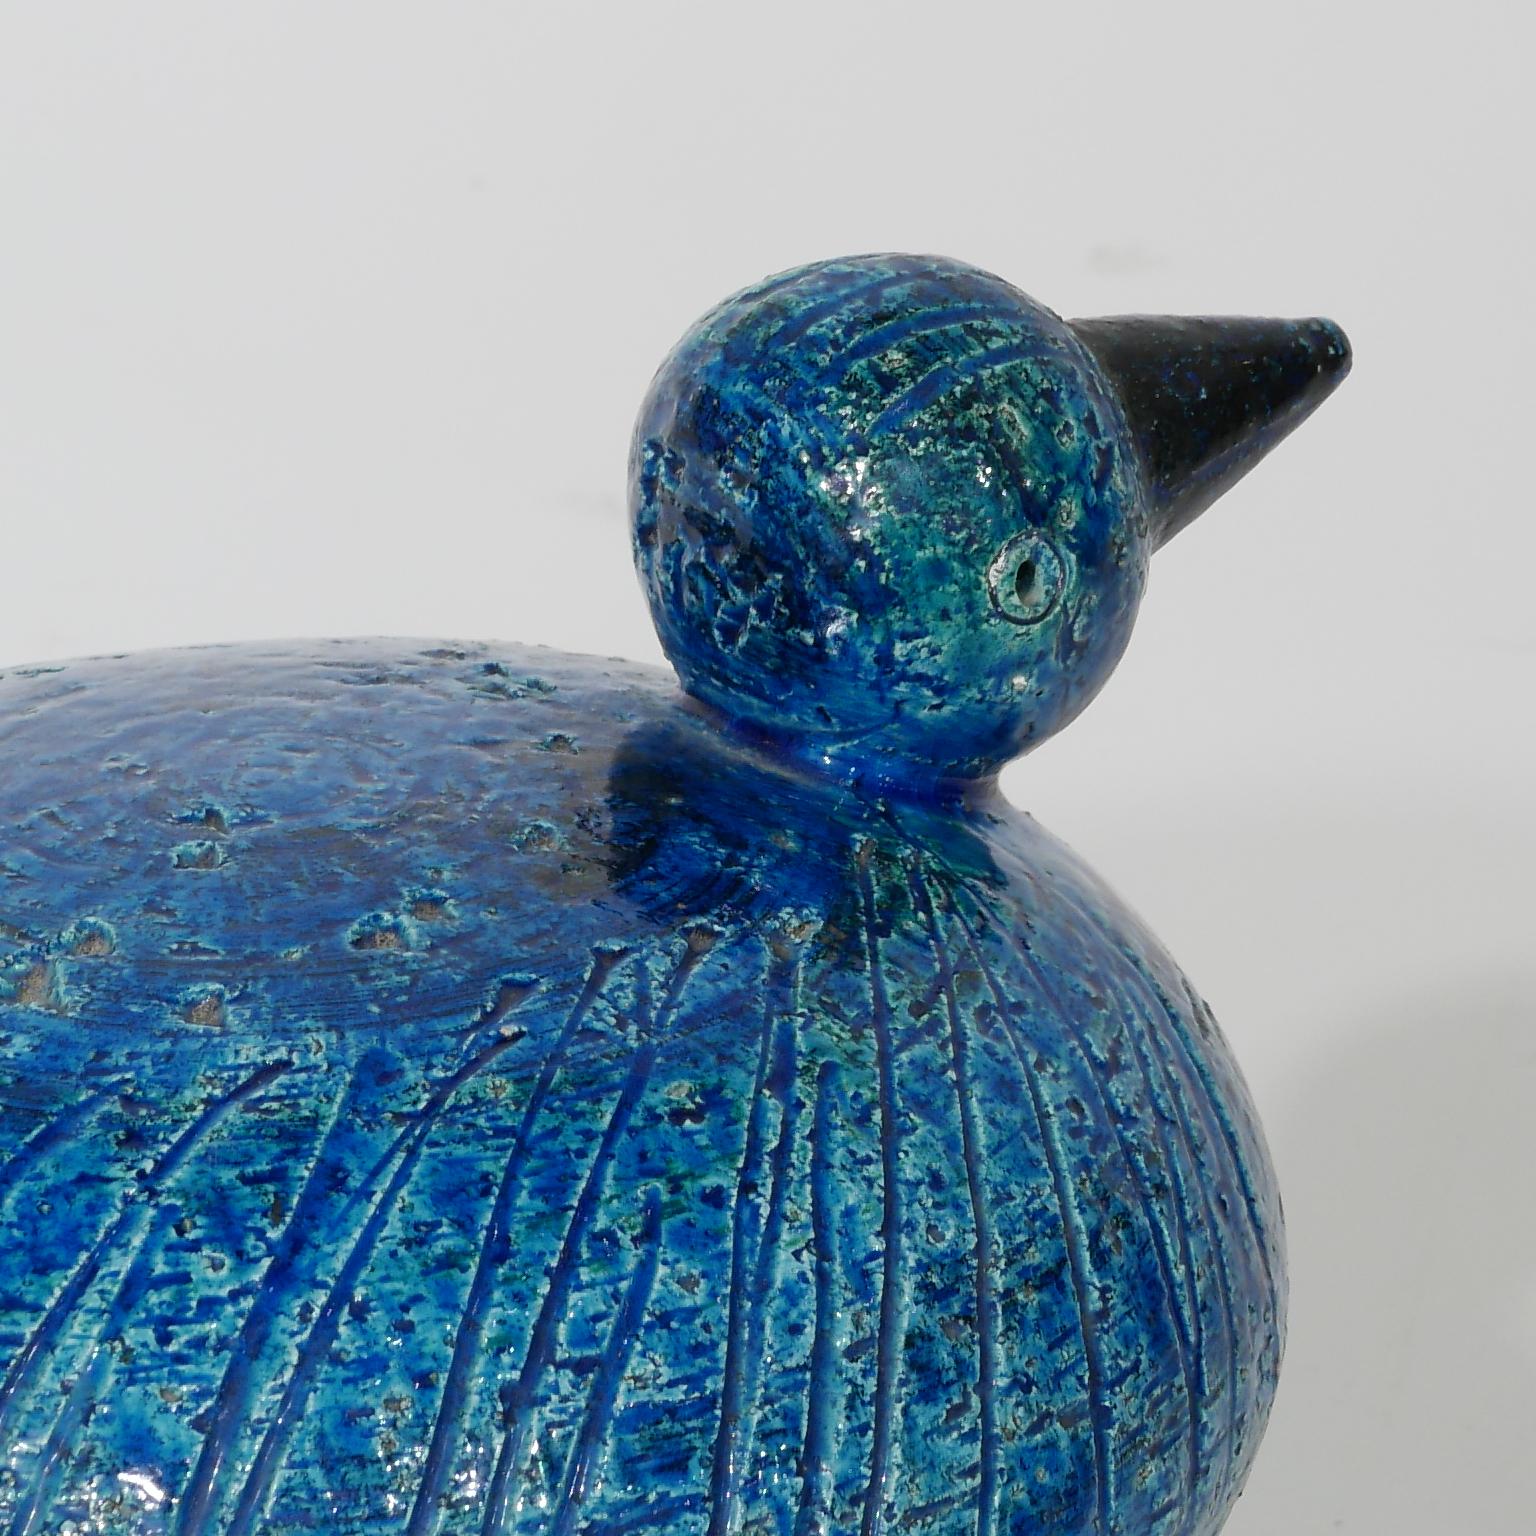 Glazed Raymor Bitossi Ceramic Duck / Bird with Metal Feet by Aldo Londi Made in Italy